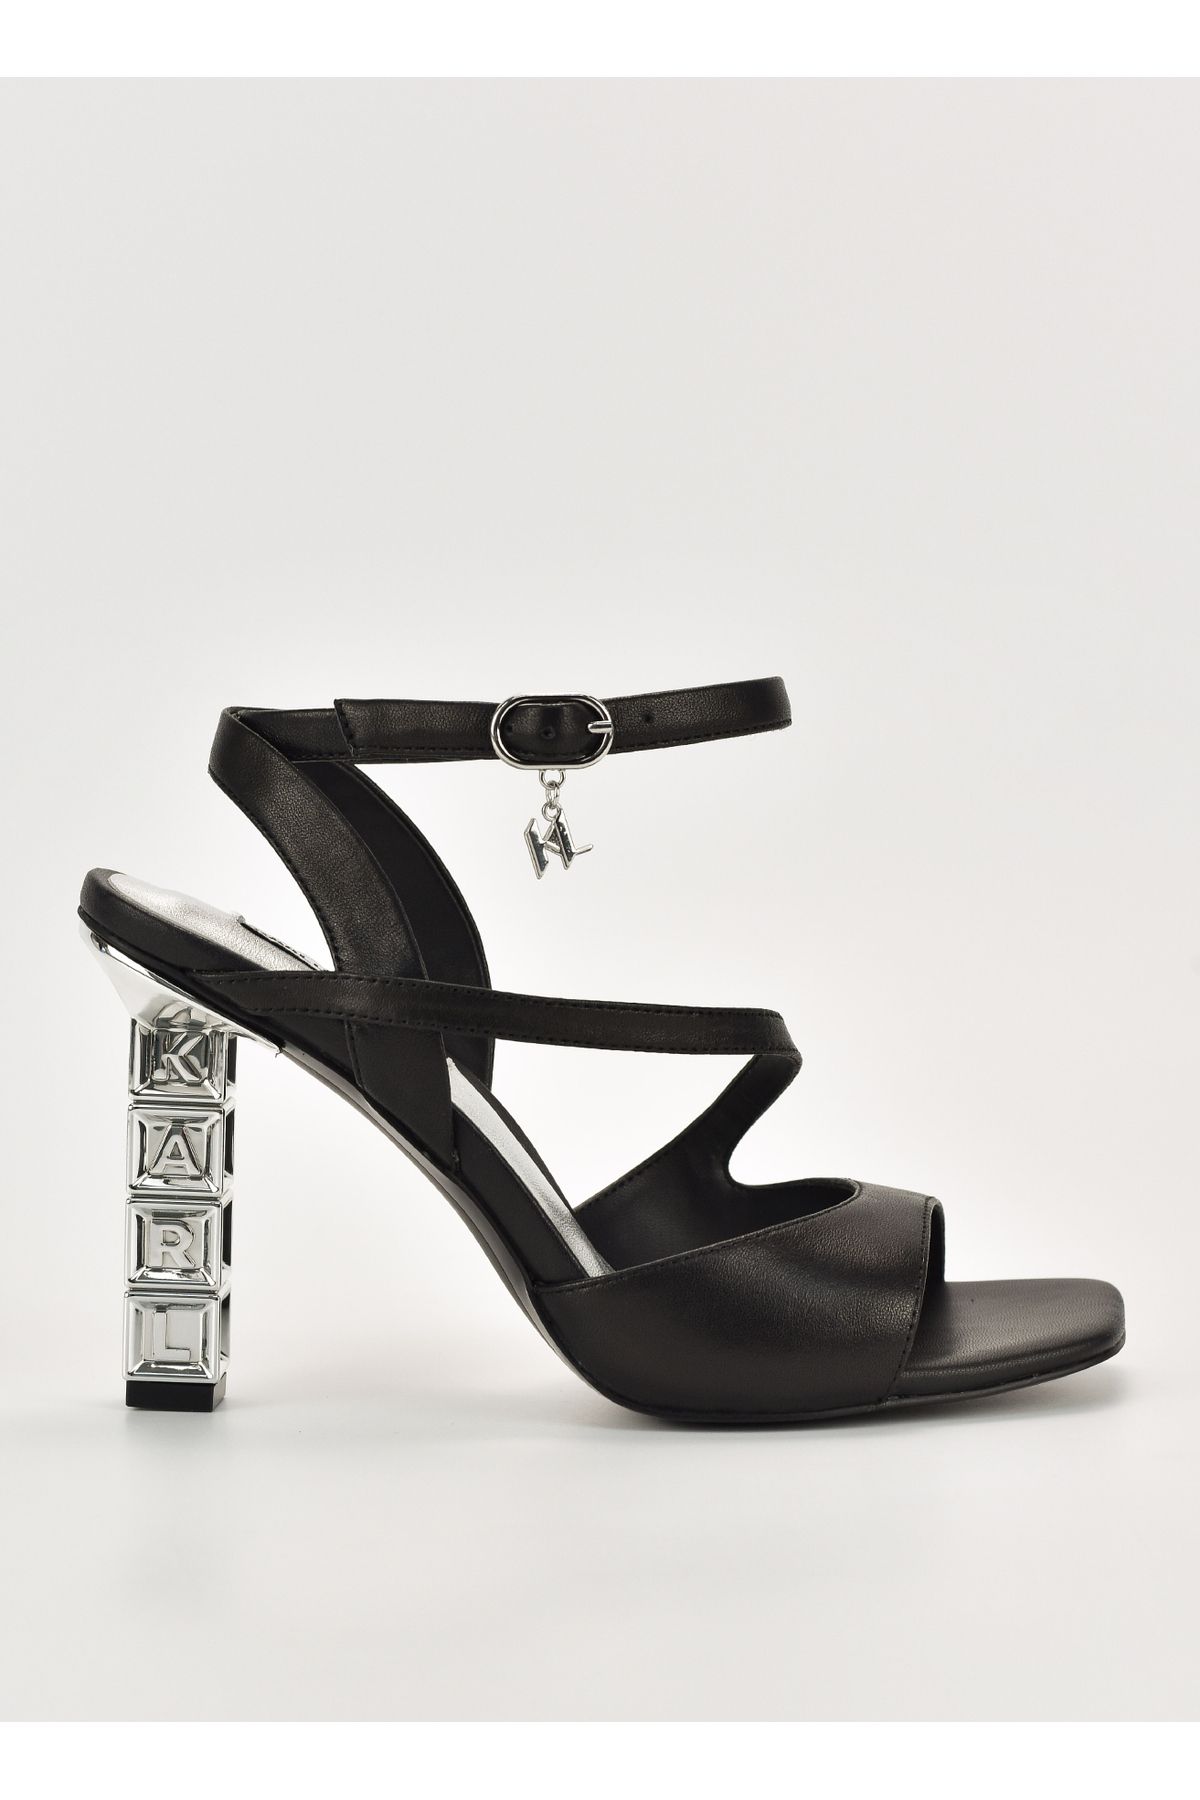 Karl Lagerfeld Deri Siyah Kadın Topuklu Ayakkabı KL33424 000